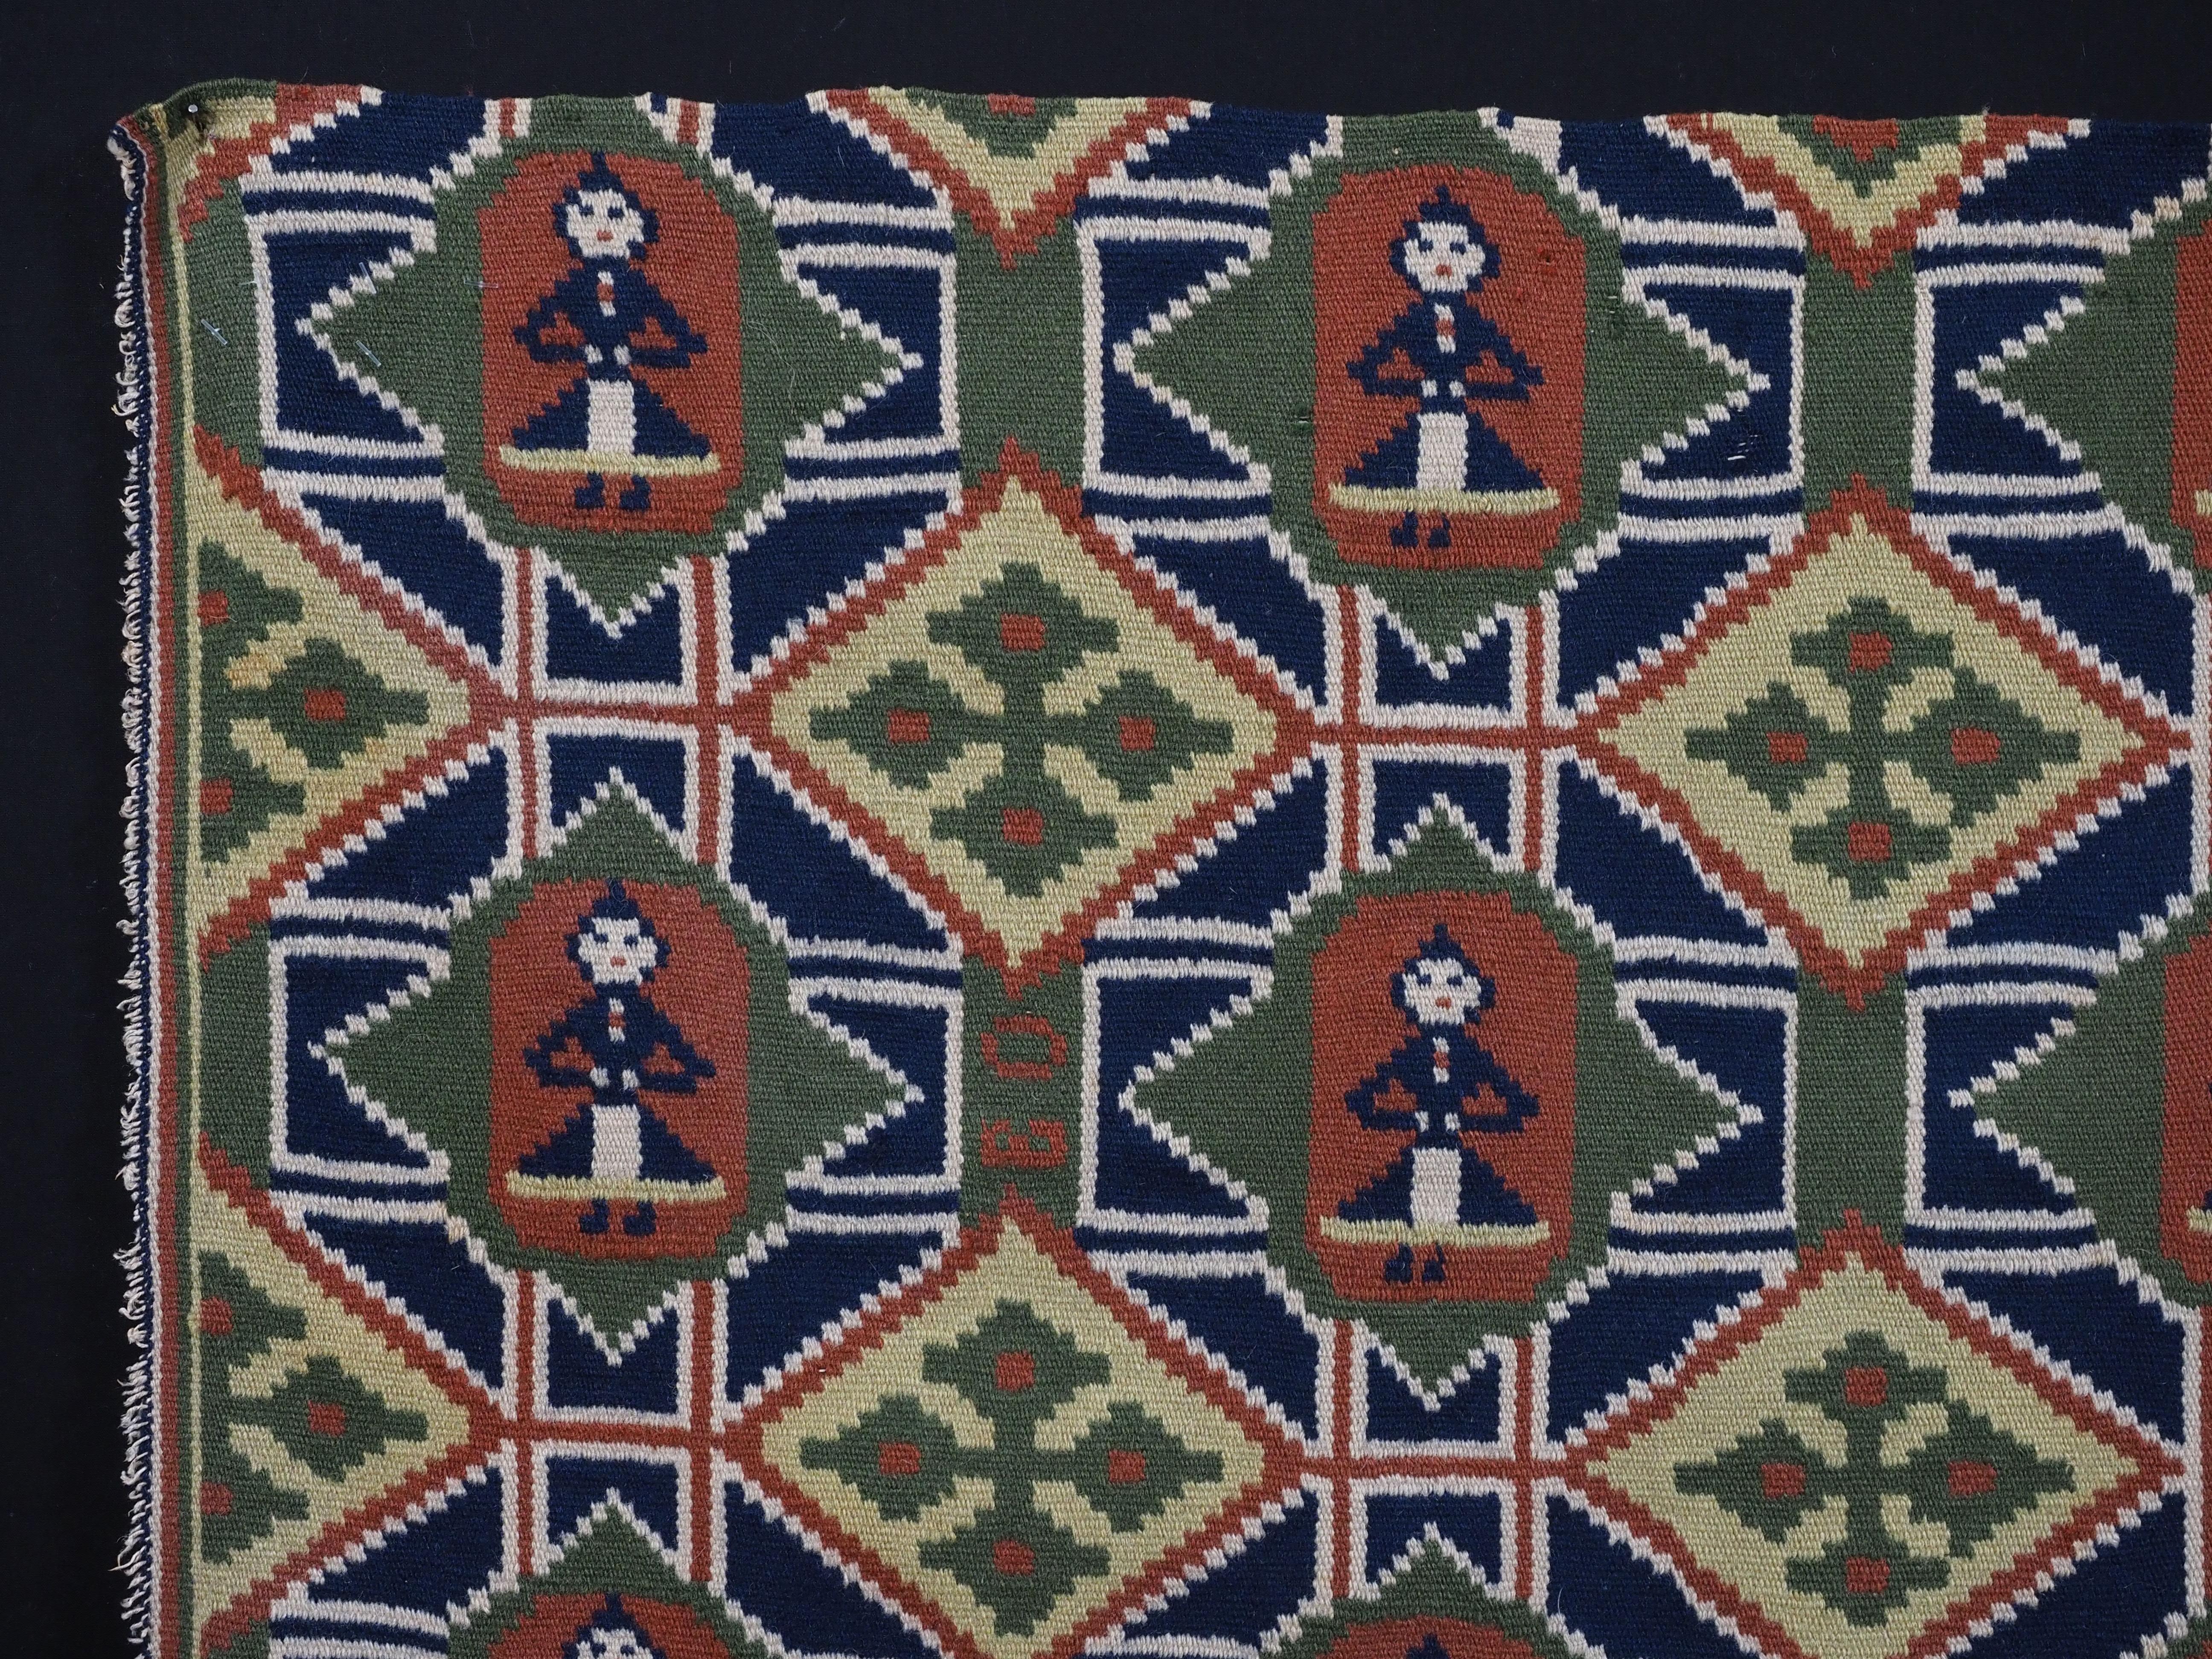 Größe: 71 x 56 cm (2ft 4in x 1ft 10in).

Antike schwedische Kutsche Kissenbezug Gesicht.

Mitte des 19. Jahrhunderts.

Diese wunderschöne Kissenhülle ist in der Technik des verflochtenen Wandteppichs gewebt; das Design ist ein Rautengitter mit neun